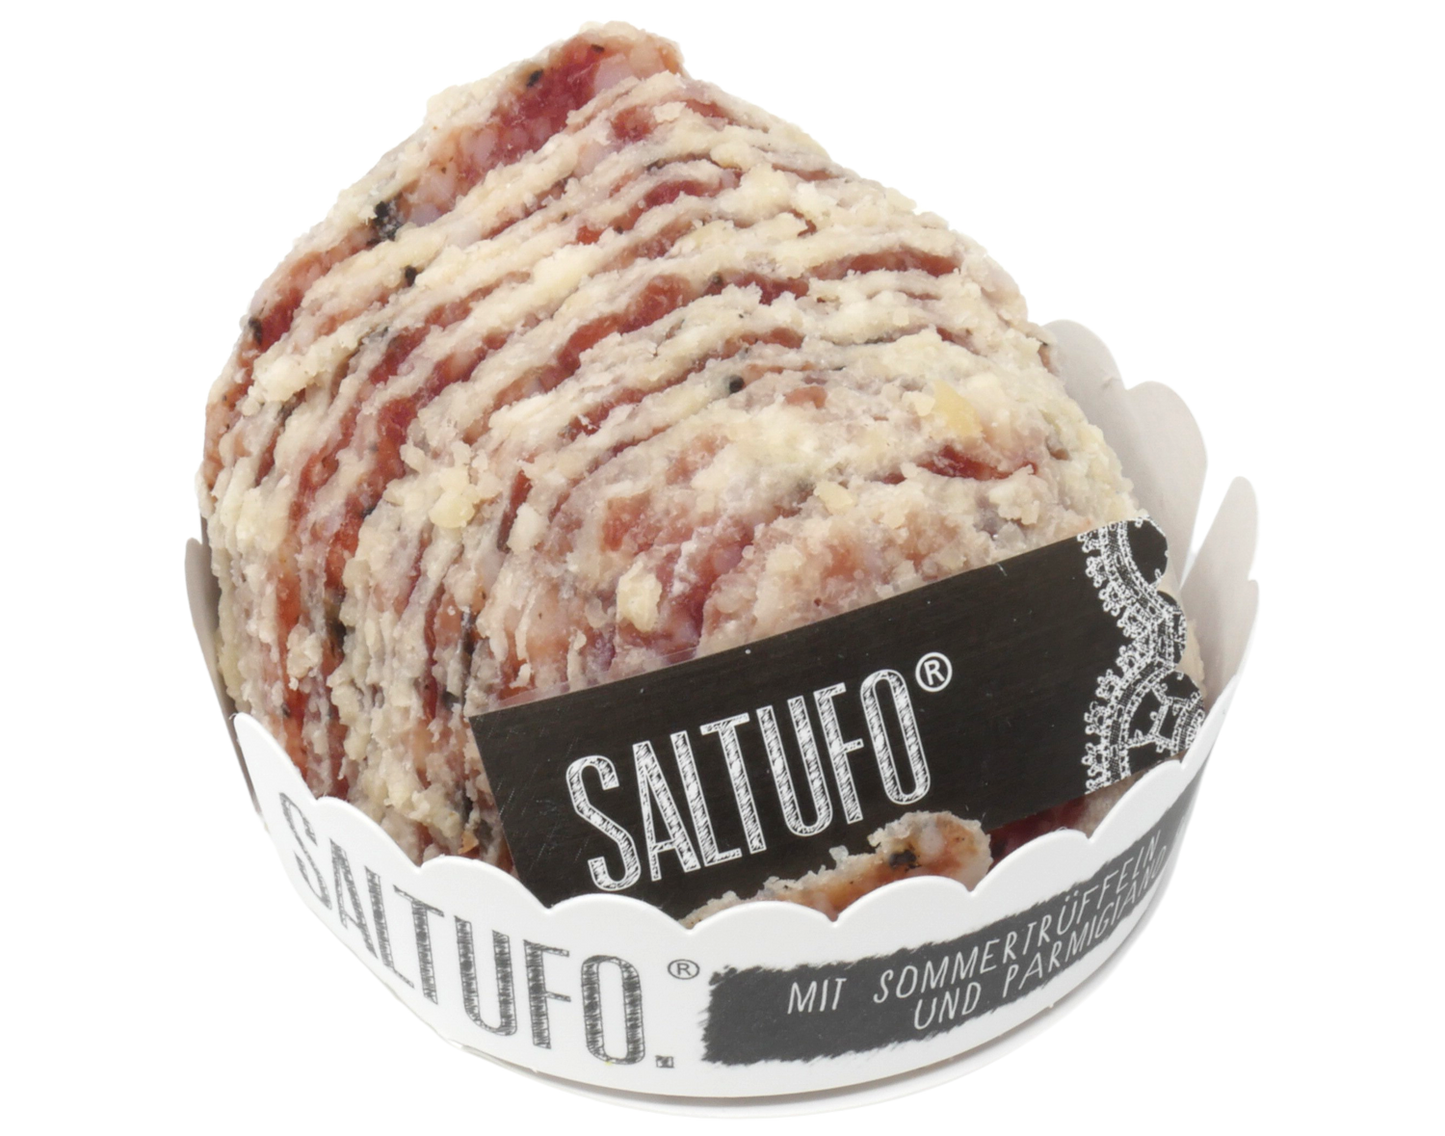 Saltufo-Kugel fein geschnitten